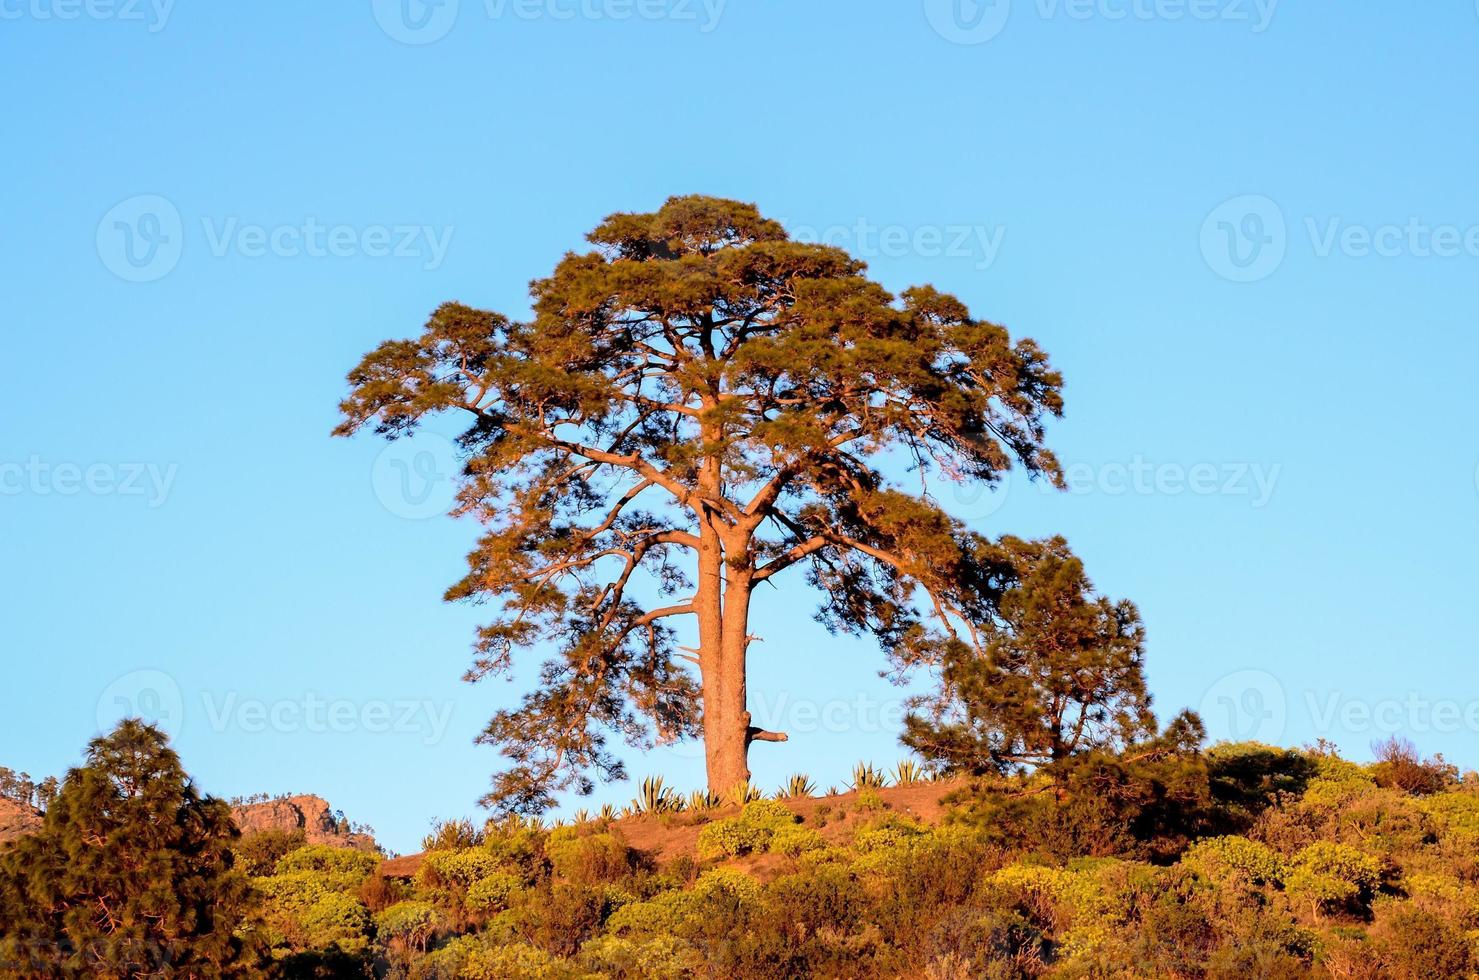 albero sulla collina foto